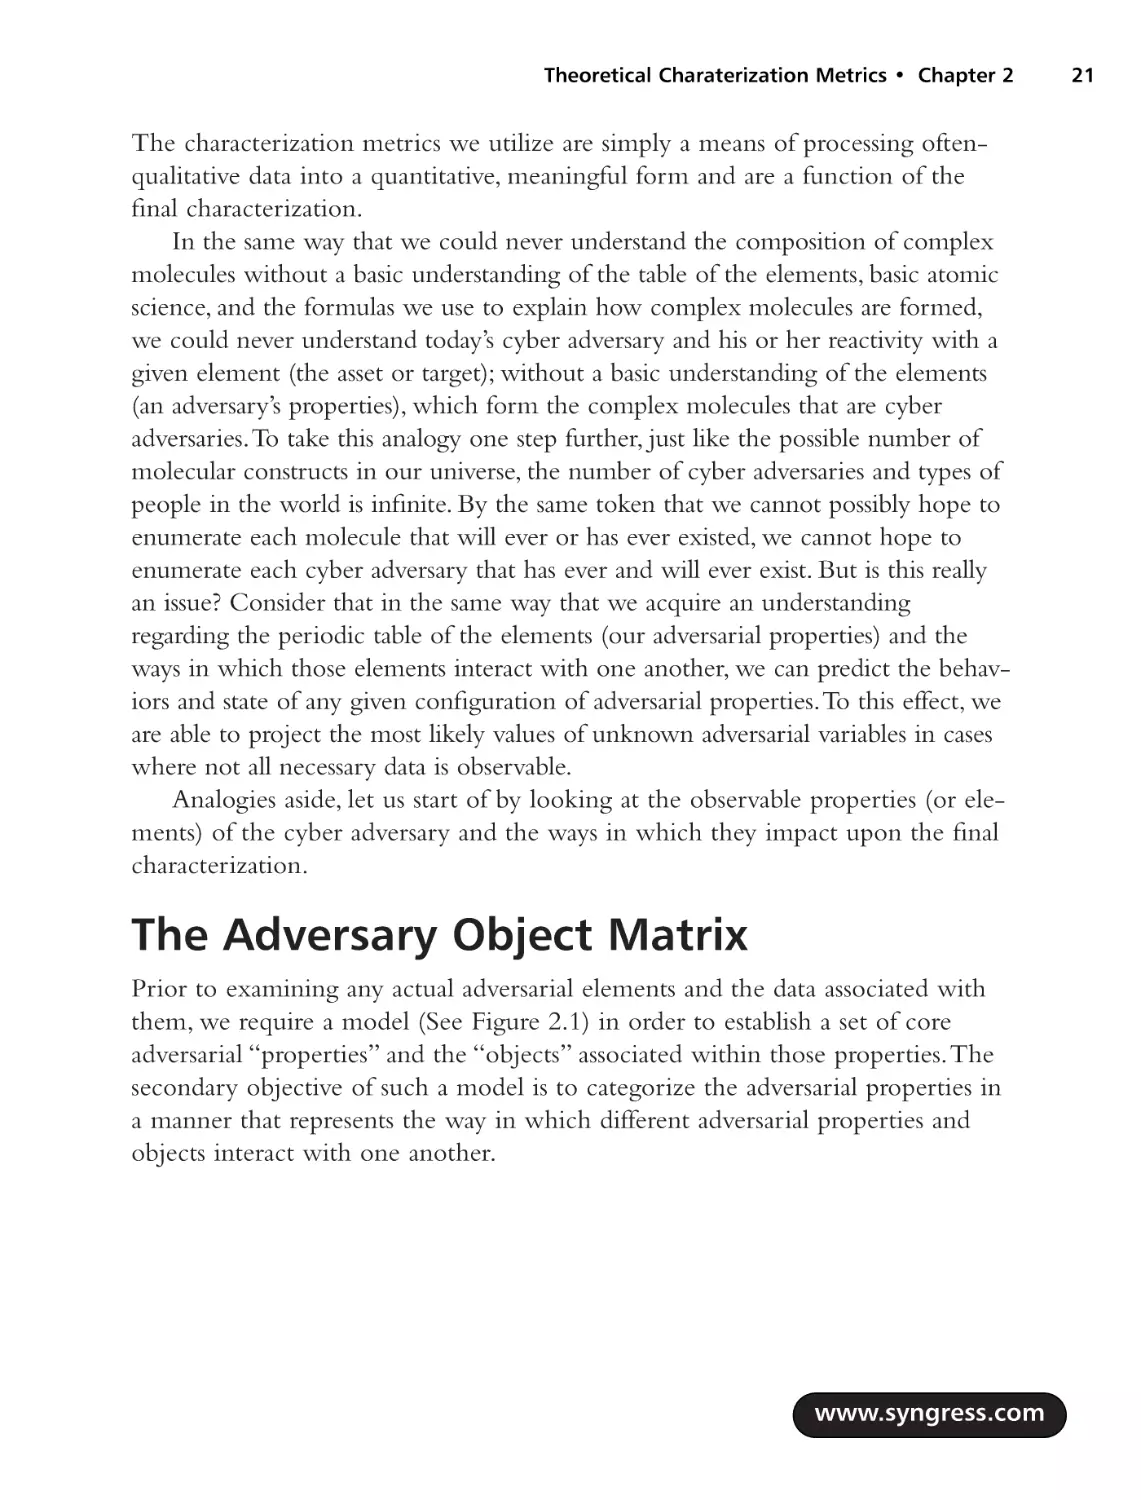 The Adversary Object Matrix